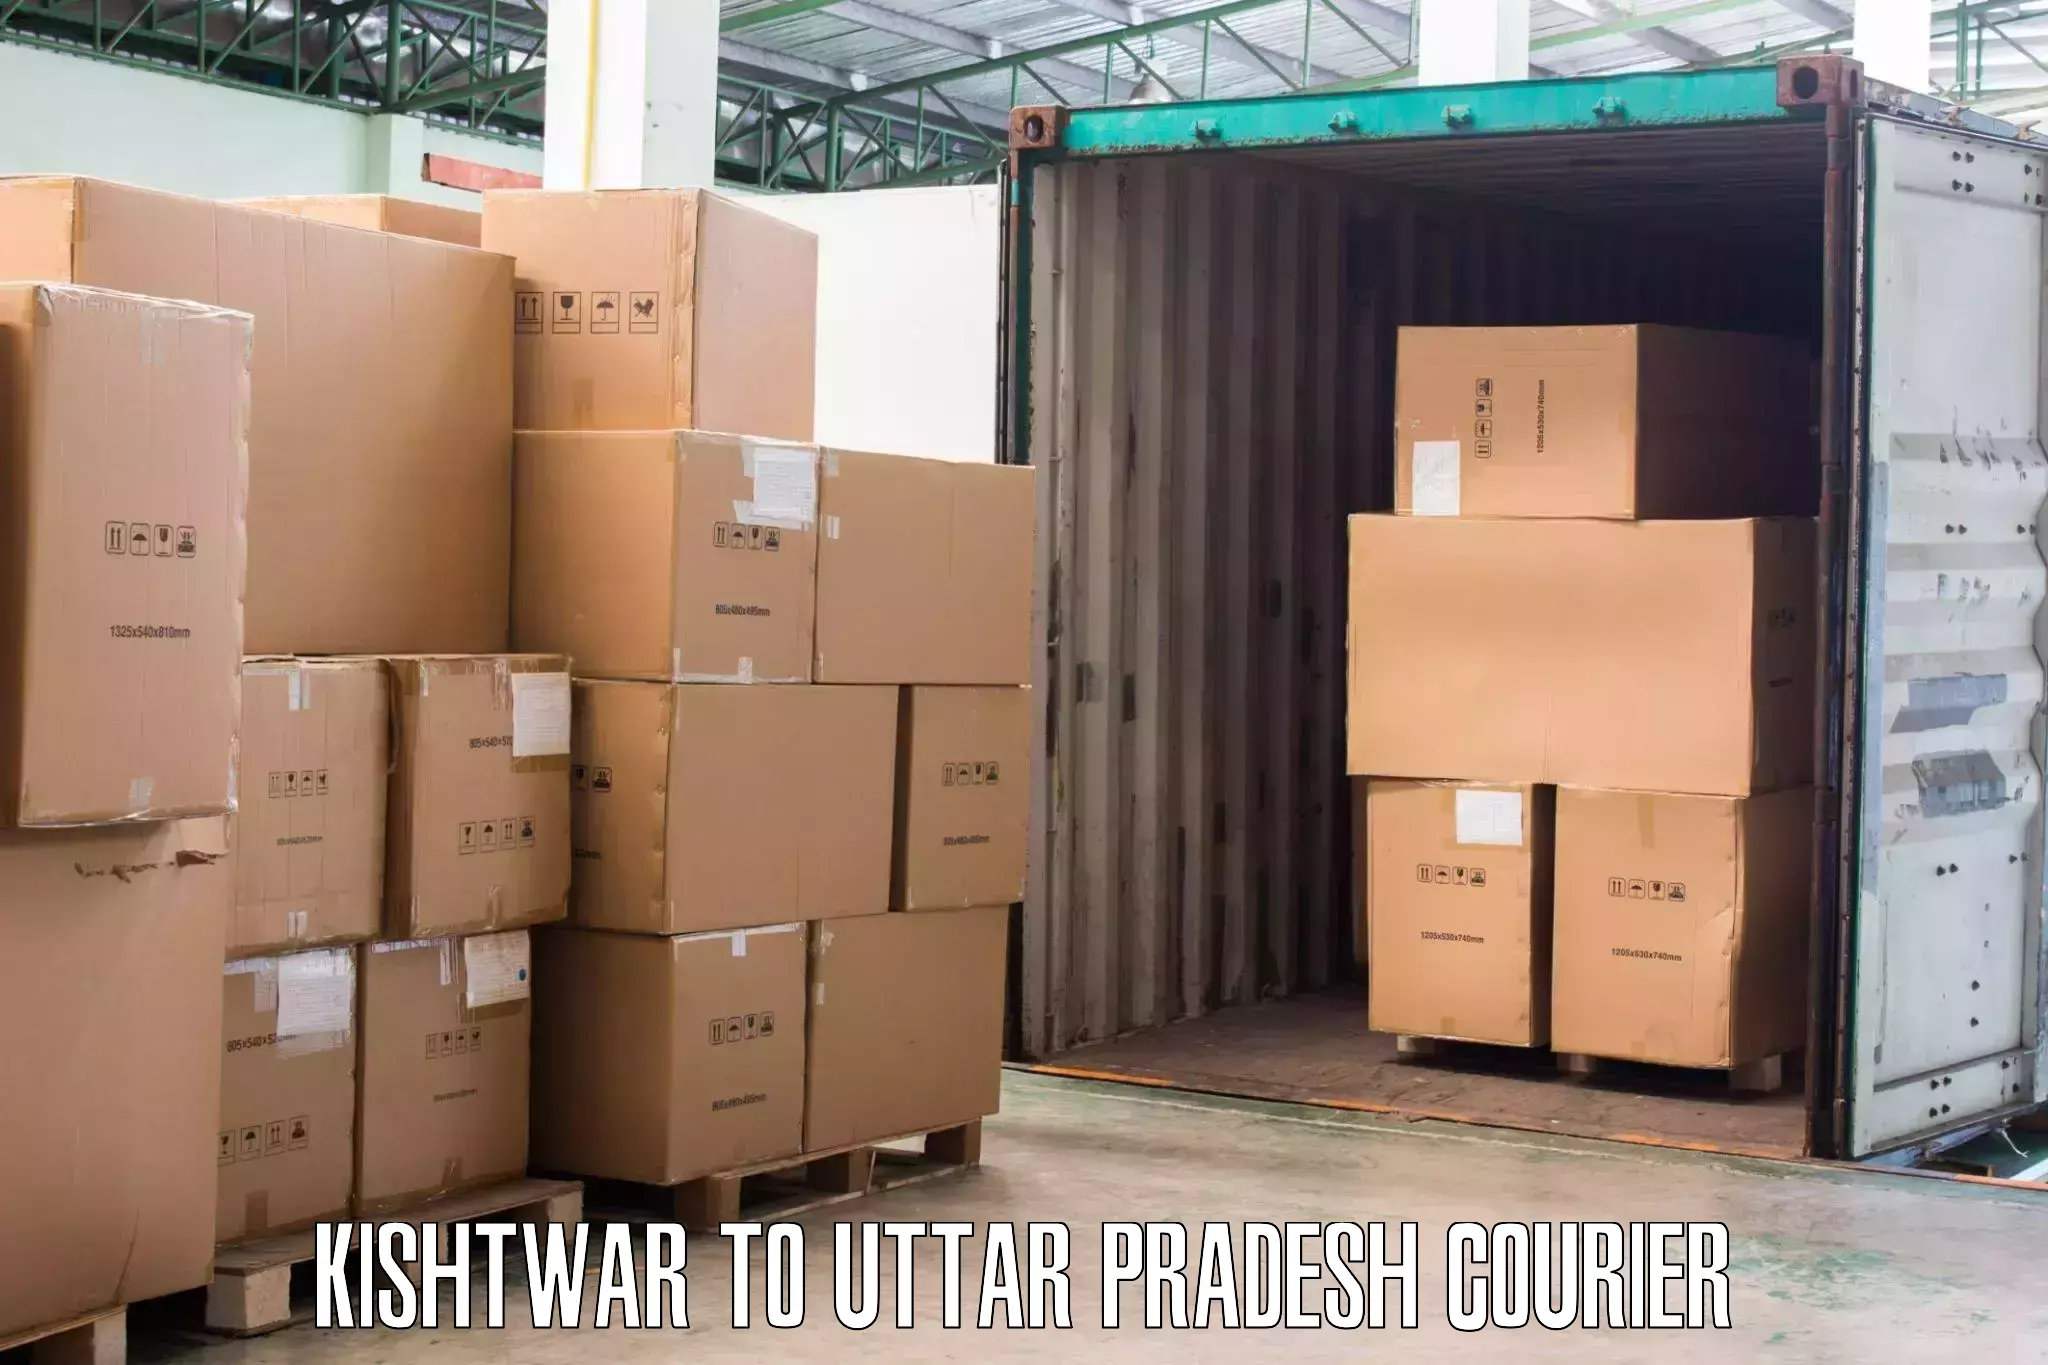 Furniture delivery service Kishtwar to Sahatwar